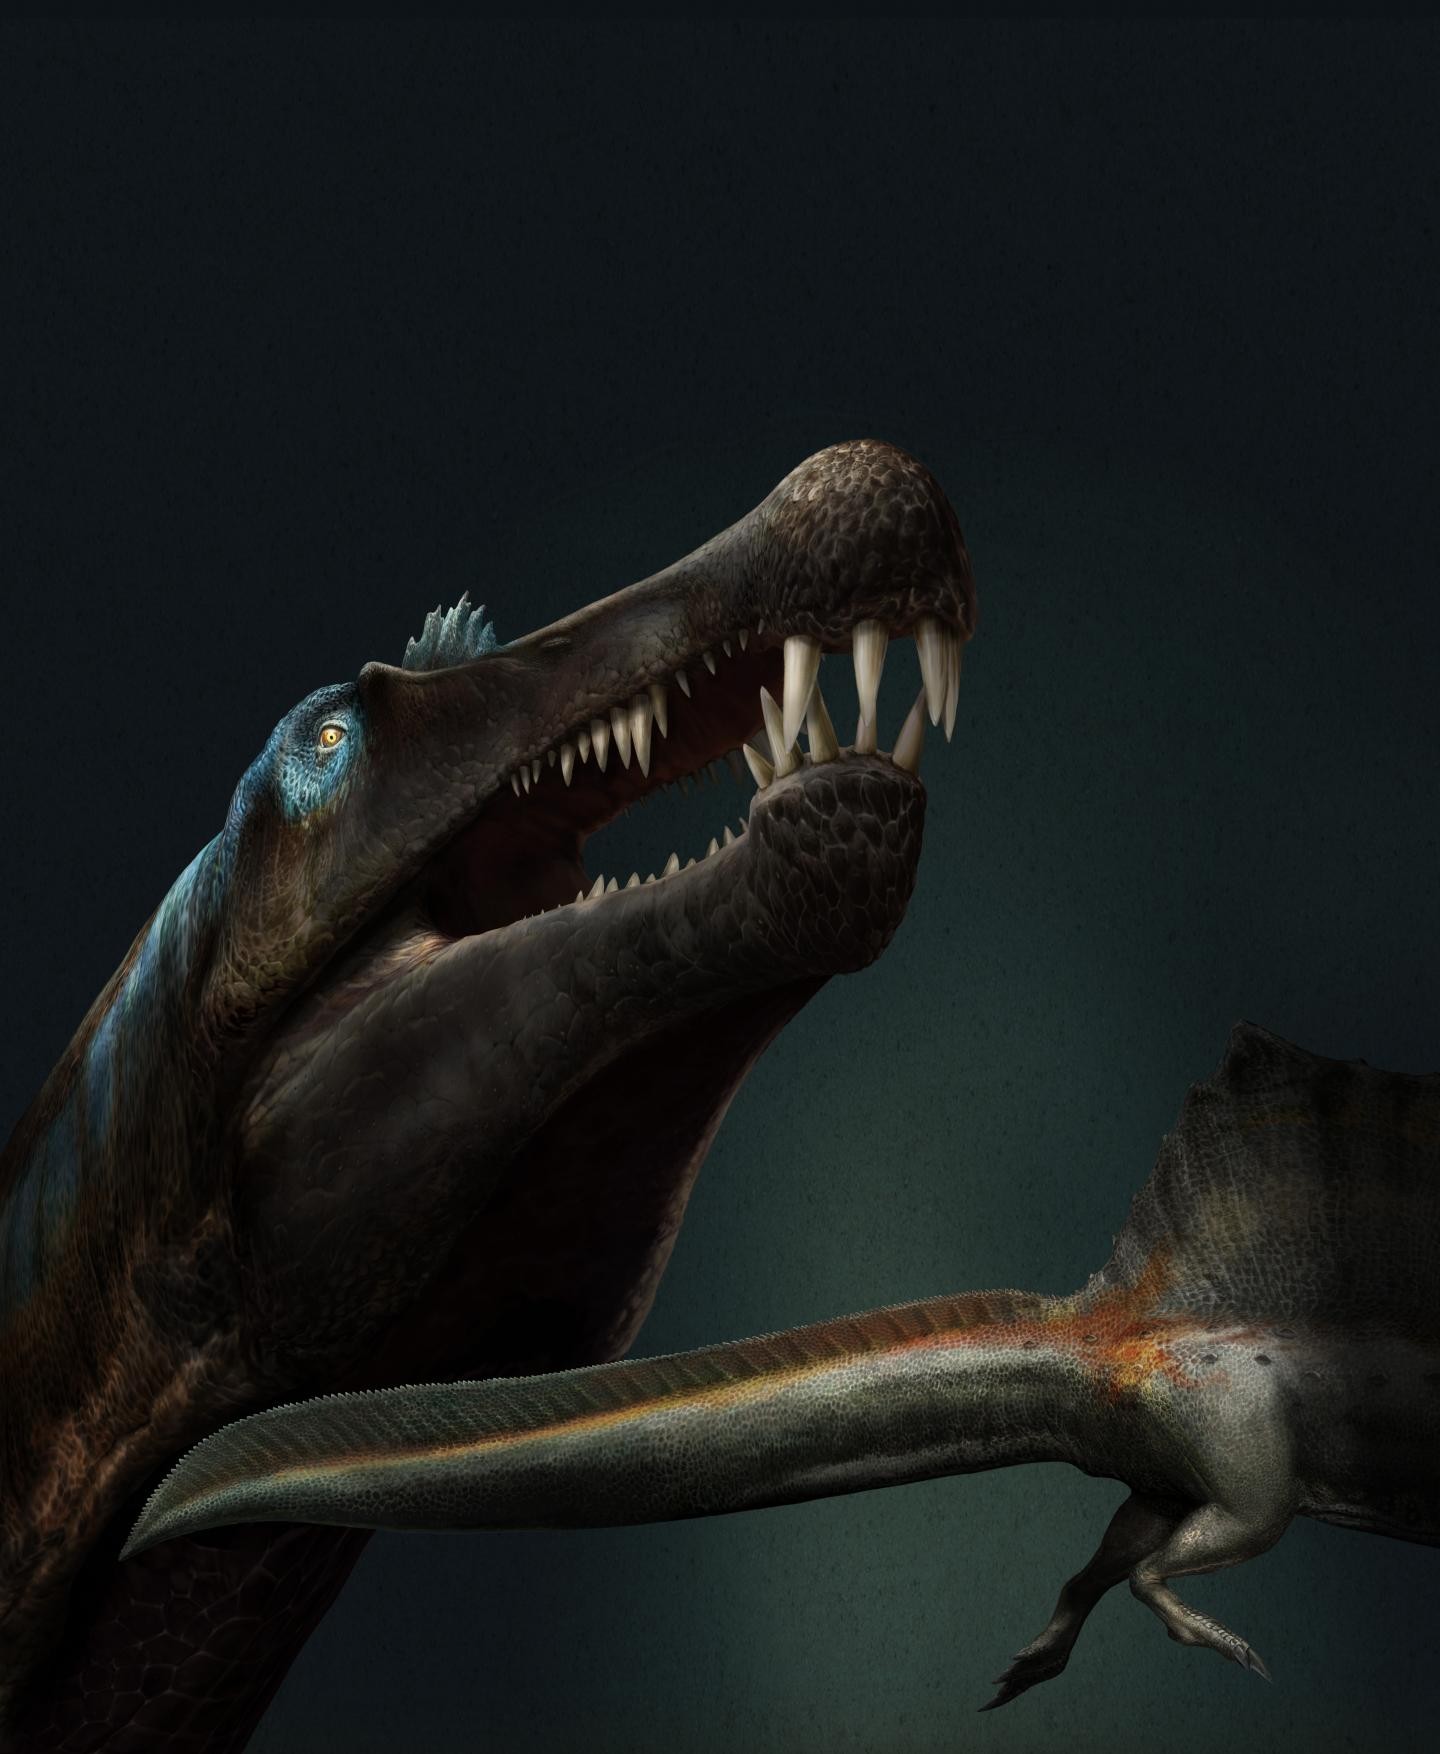 Dentes de espinossauro sugerem que espécie vivia na água há 100 mi de anos (Foto: Davide Bonadonna)